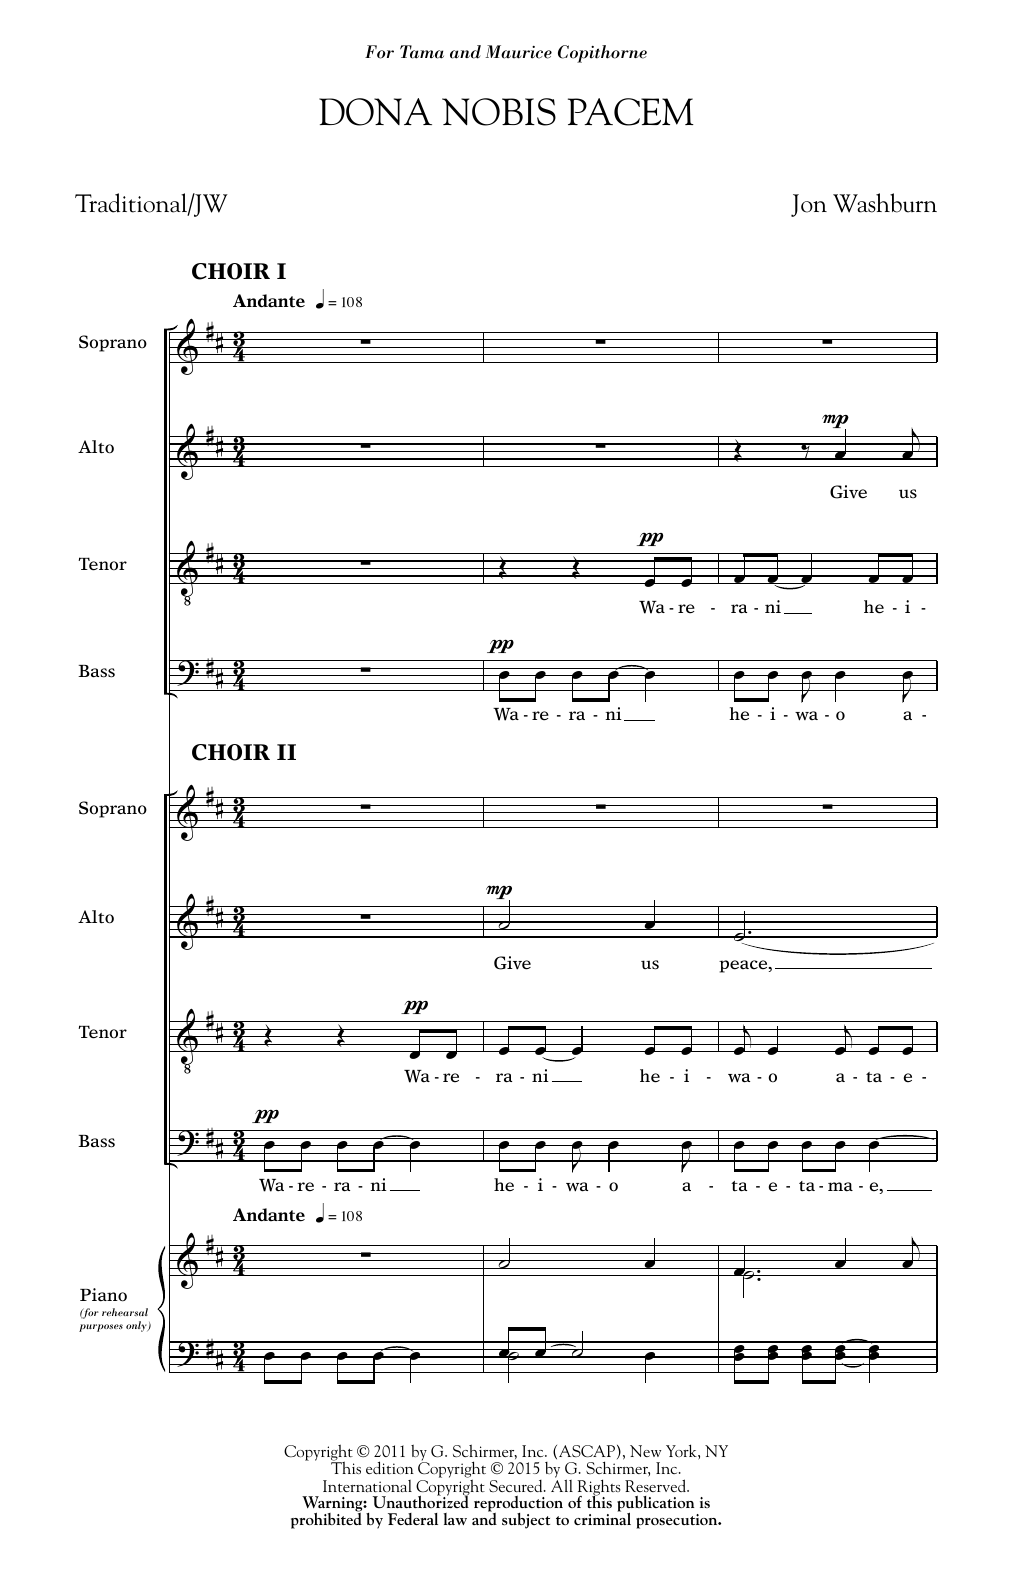 Jon Washburn Dona Nobis Pacem Sheet Music Notes & Chords for SATB - Download or Print PDF